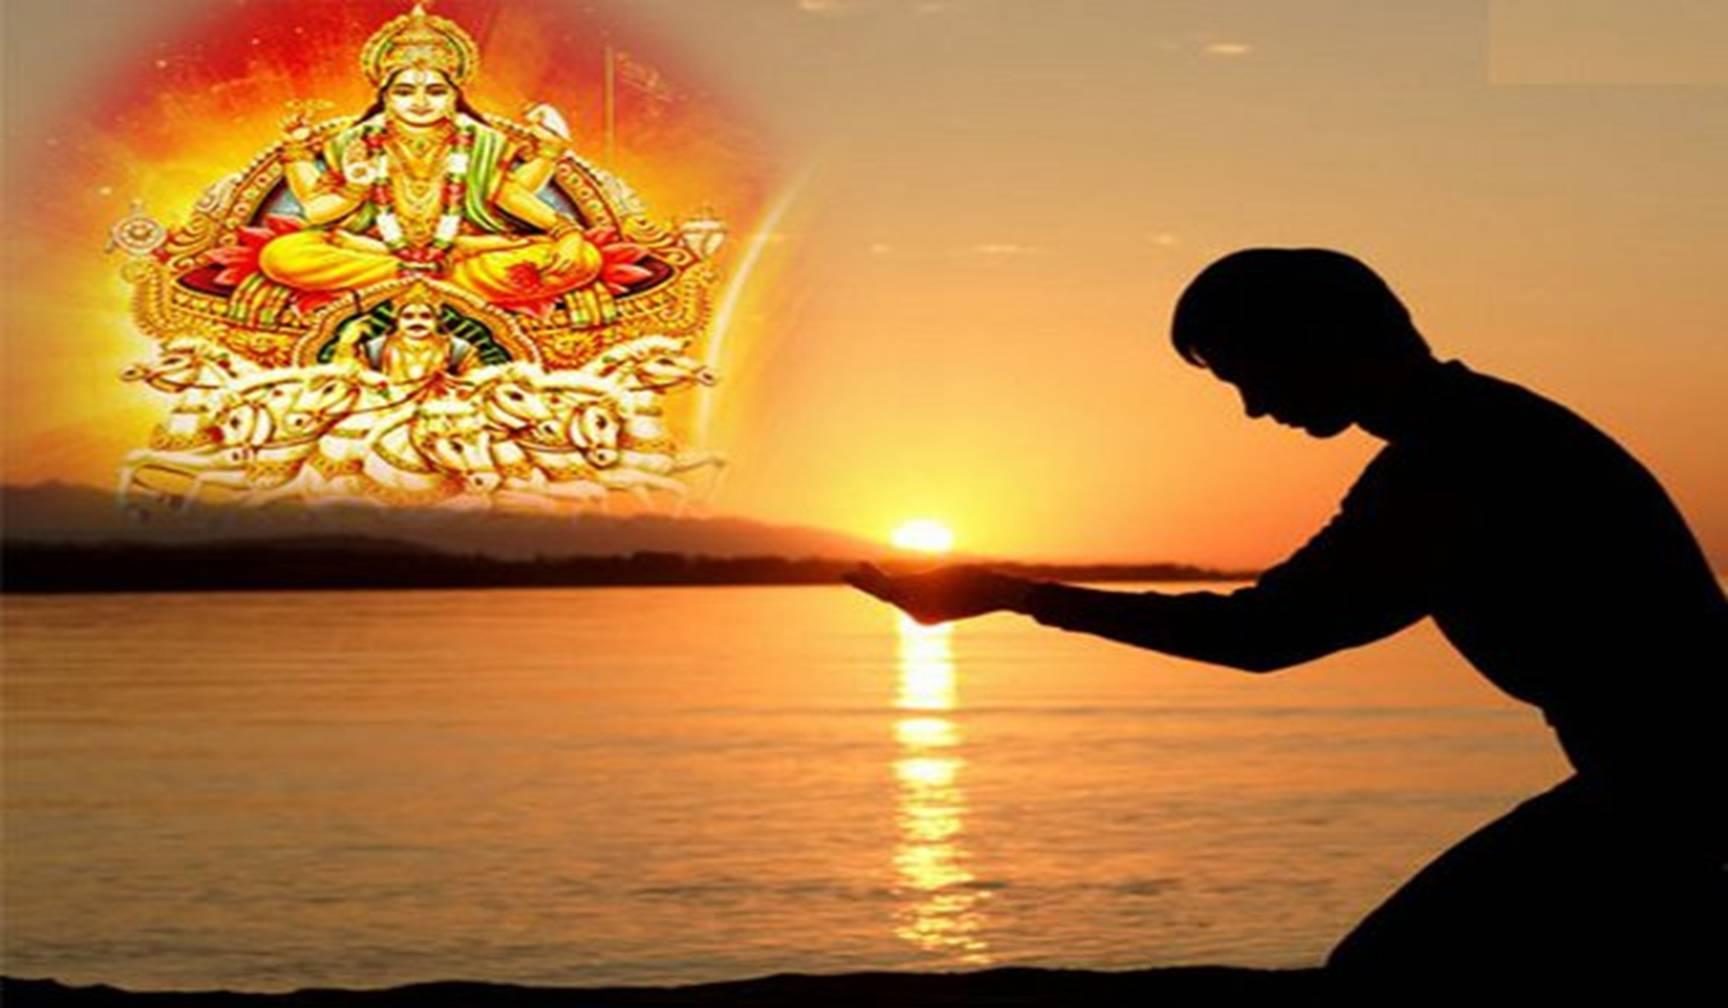 जानिए सूर्य पूजा का सबसे अच्छा तरीका जिससे खुल जाएगी सोयी किस्मत, मिलेगी अपार सफलता के साथ सुख-समृद्धि